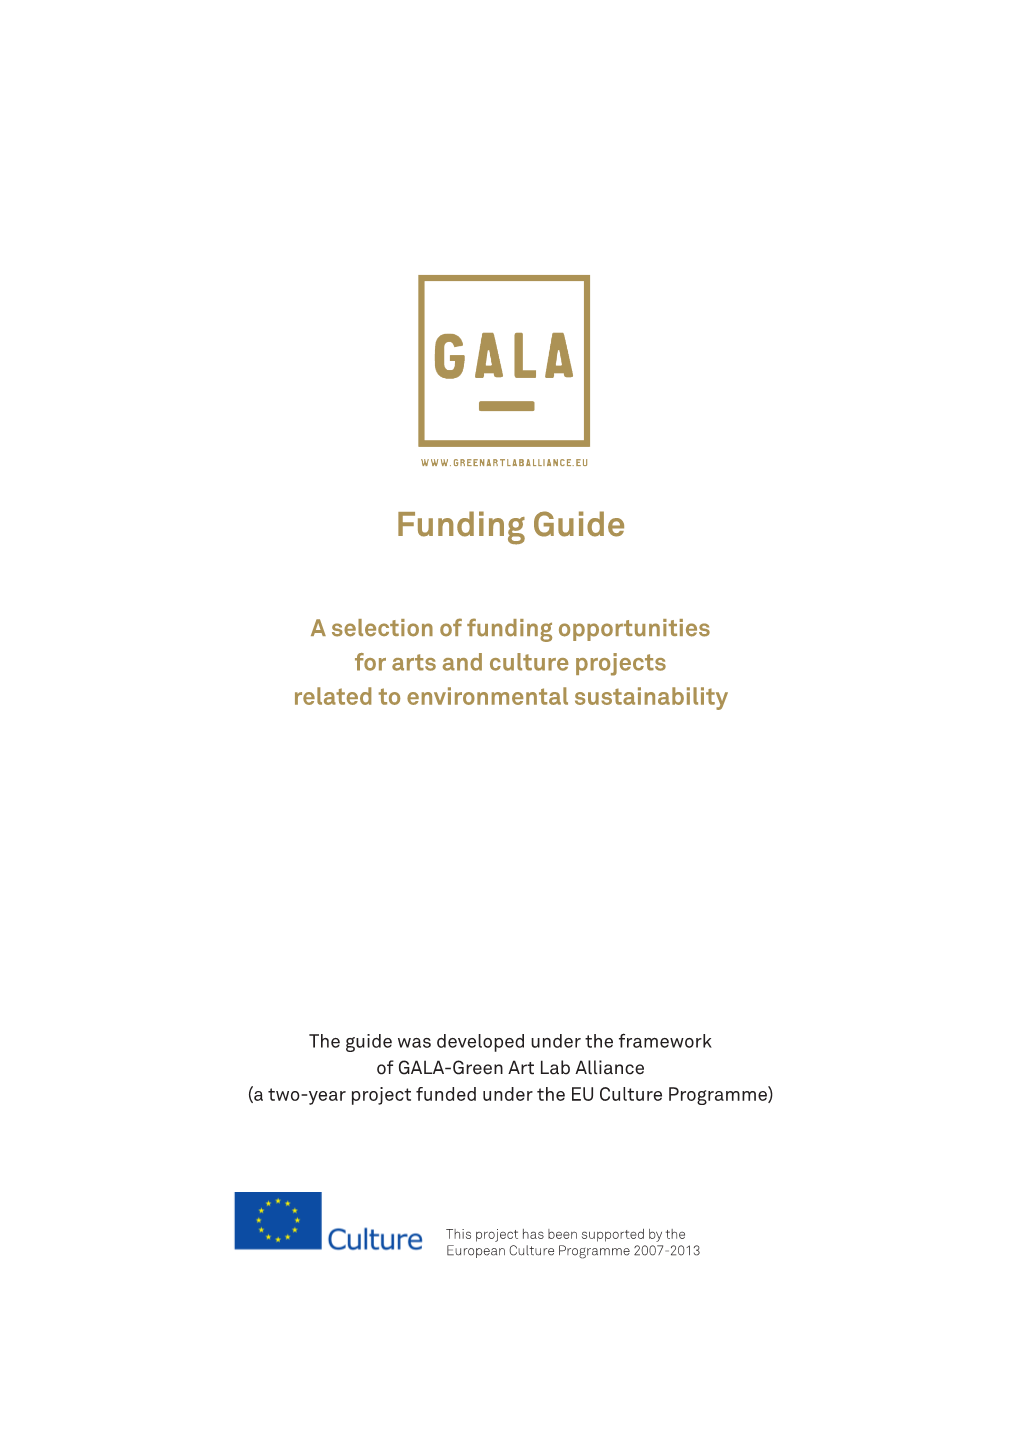 GALA Funding Guide